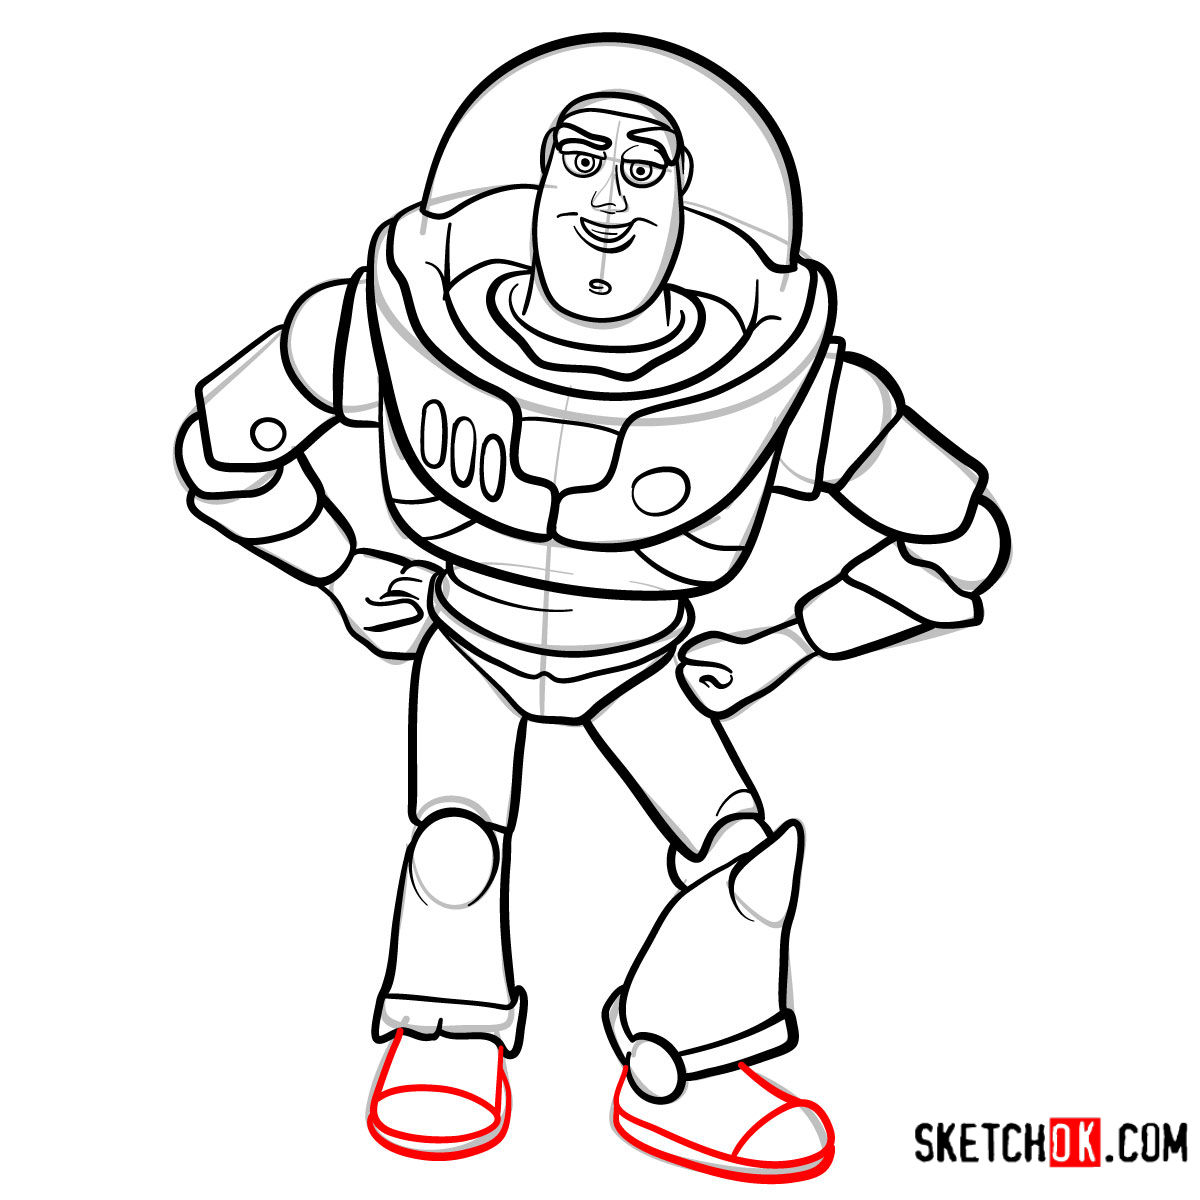 How to draw Buzz Lightyear | Toy Story - step 13